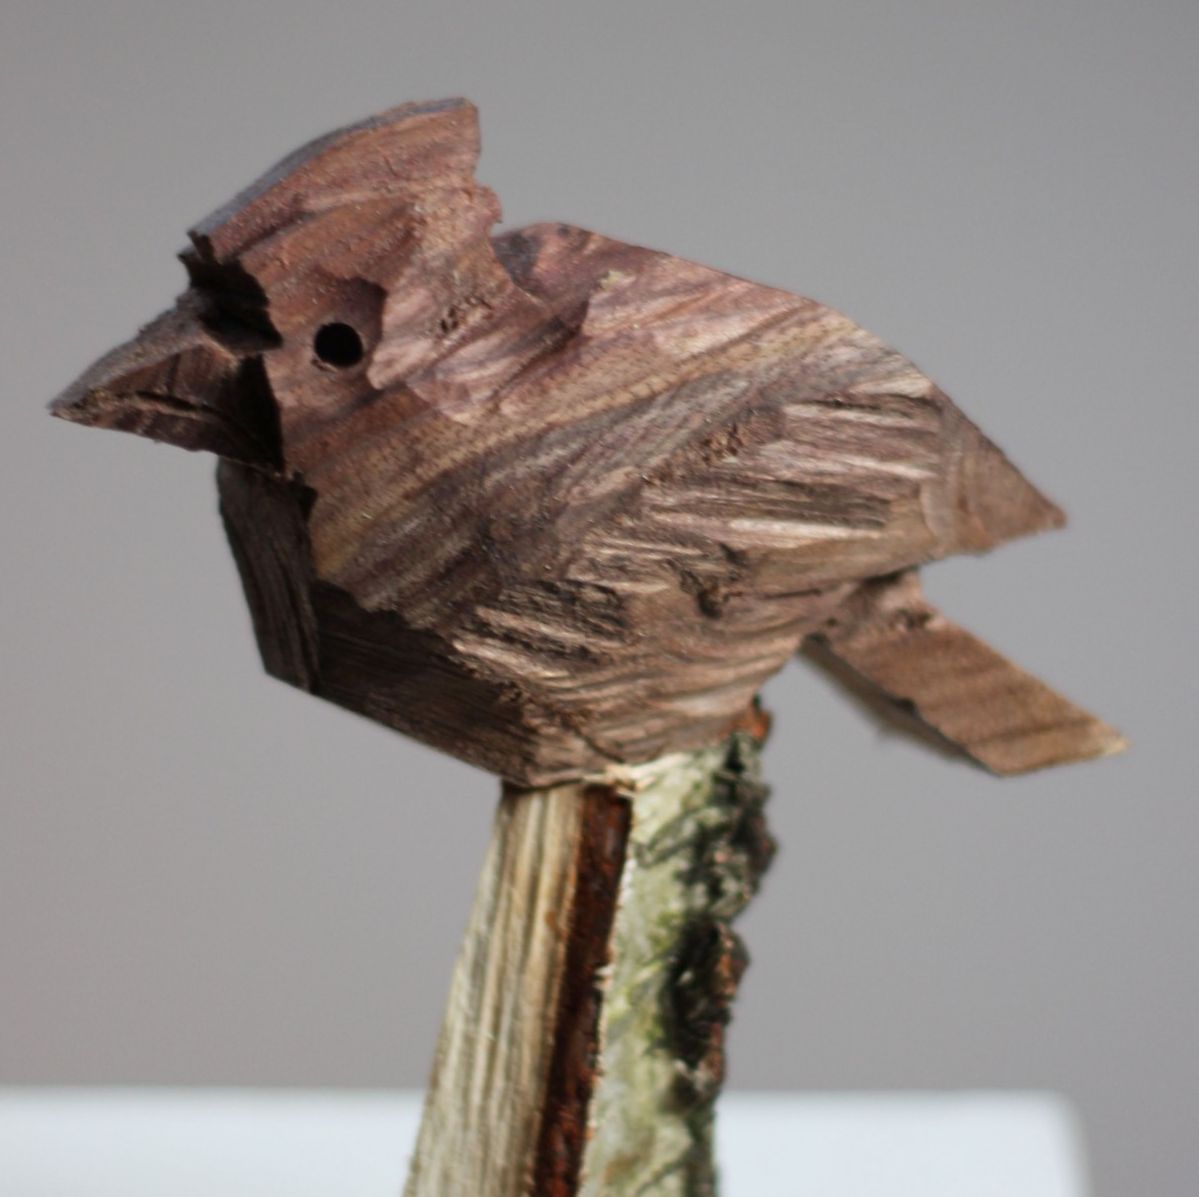 Drewniany ptaszek siedzący, BURY, rzeźba z drewna